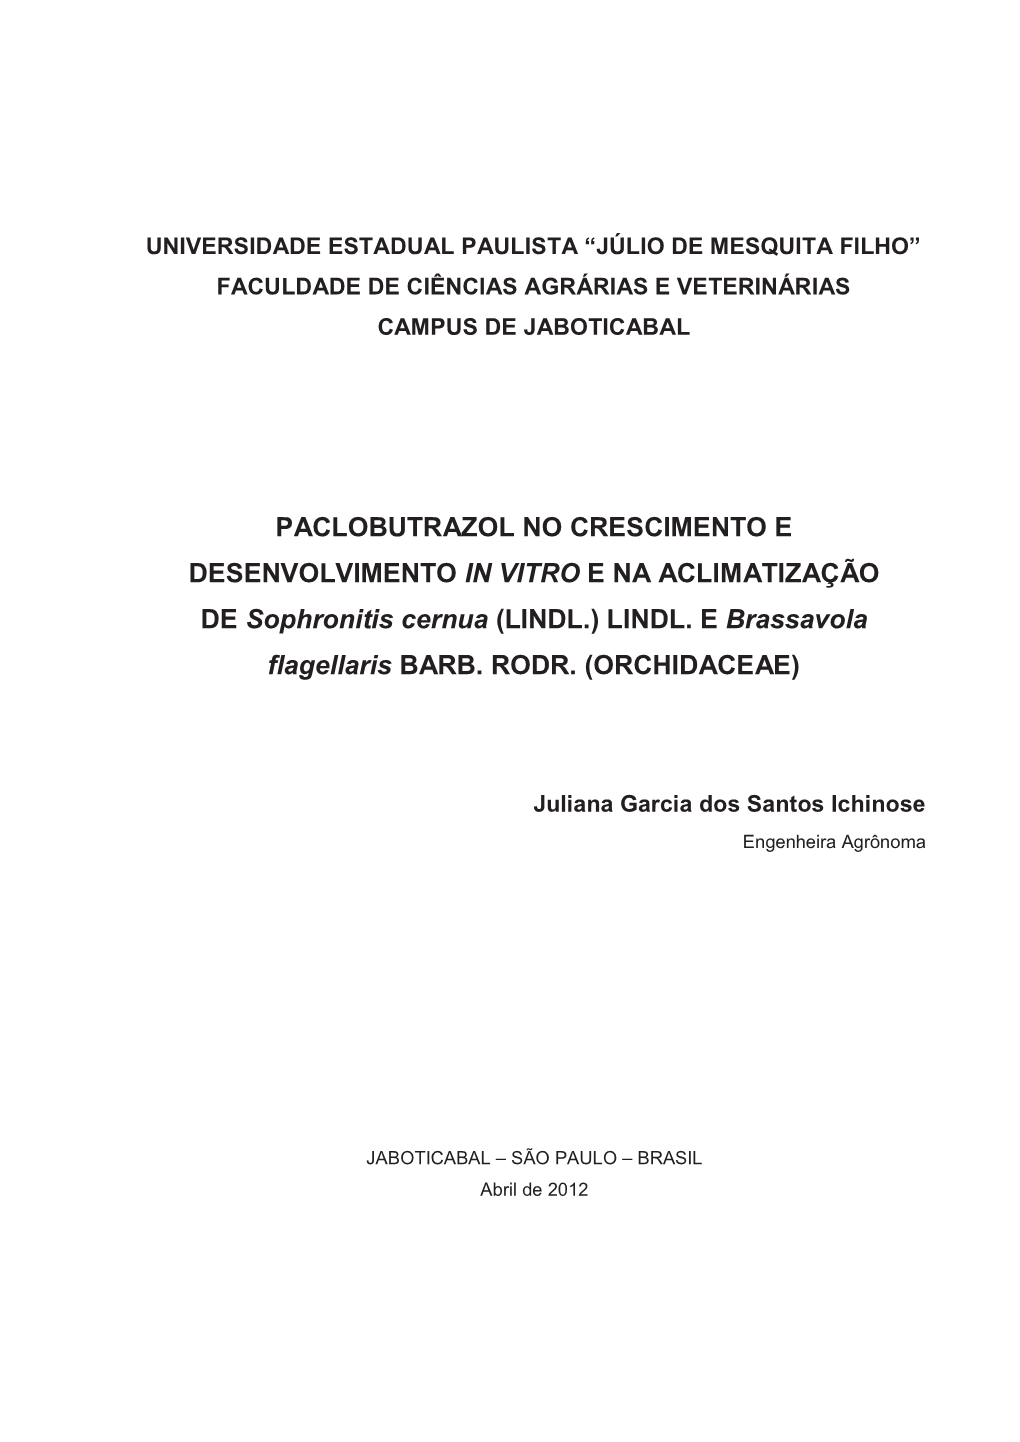 PACLOBUTRAZOL NO CRESCIMENTO E DESENVOLVIMENTO in VITRO E NA ACLIMATIZAÇÃO DE Sophronitis Cernua (LINDL.) LINDL